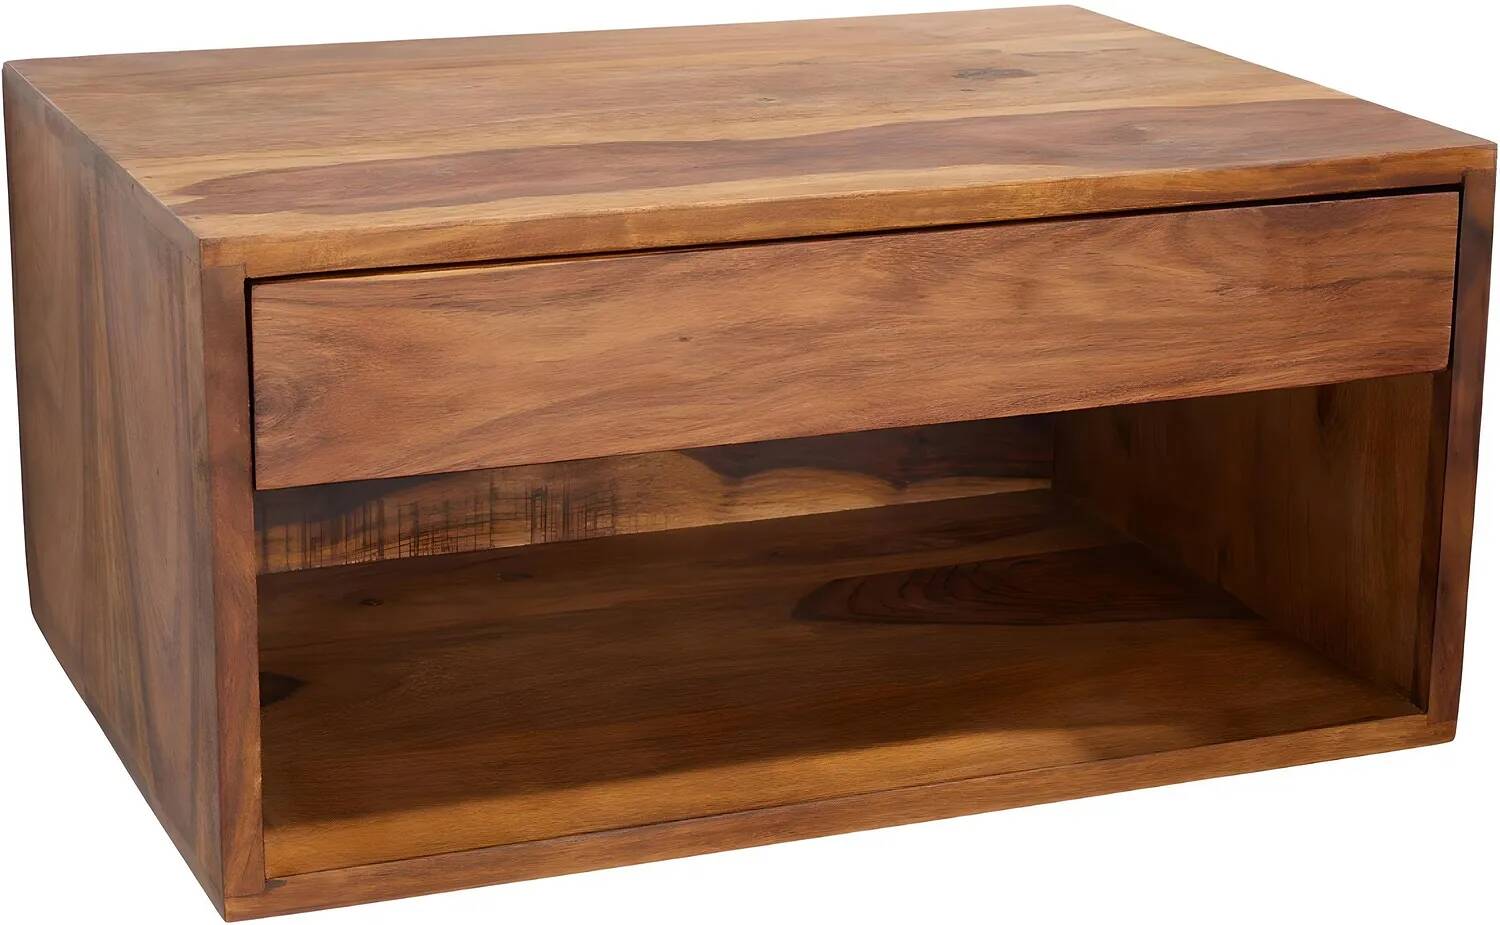 Table de chevet en bois massif de sheesham 1 porte et 1 compartiment